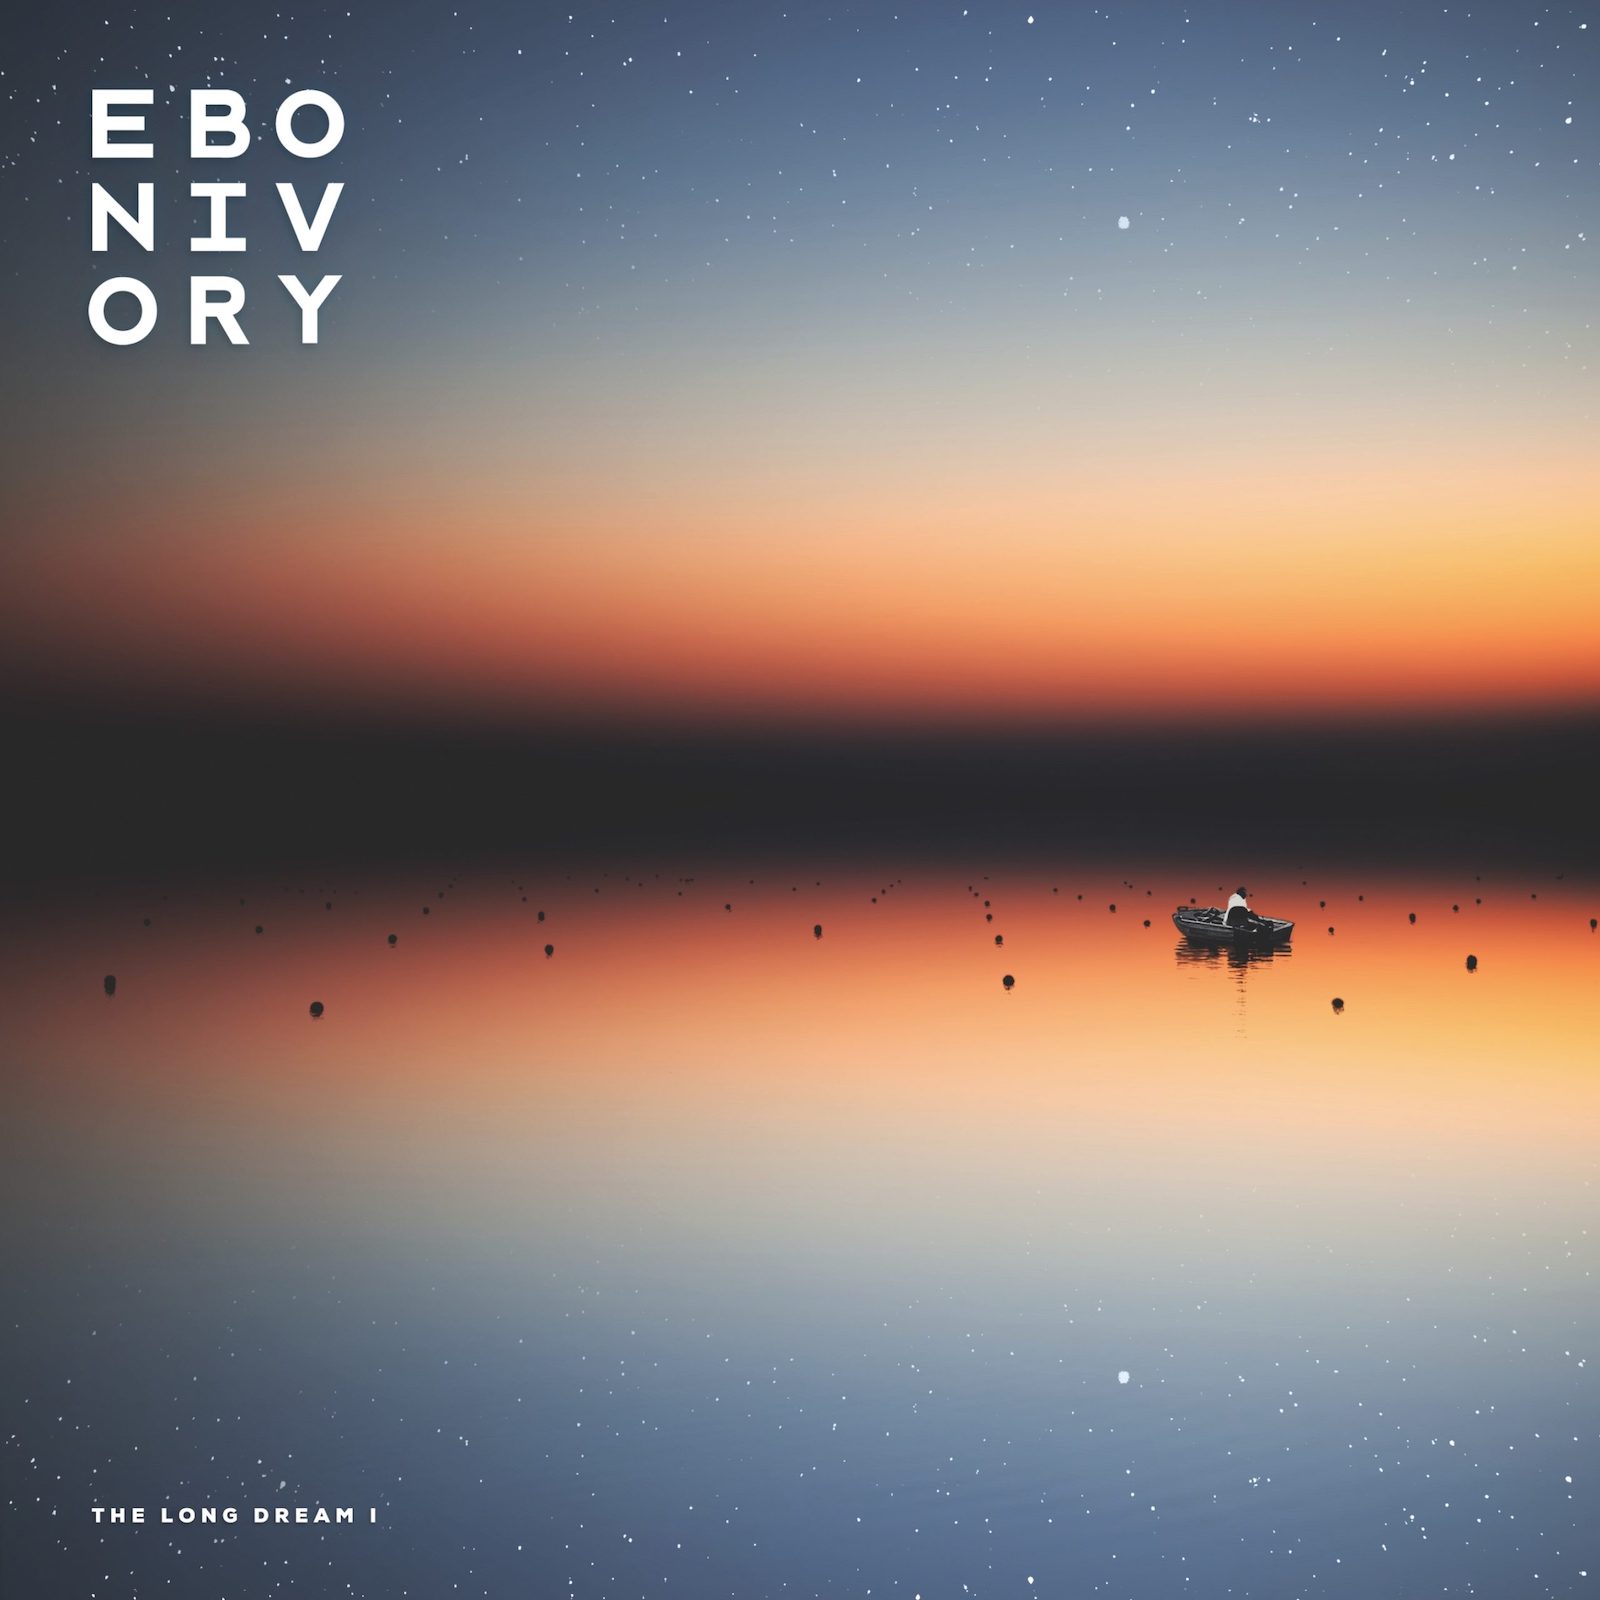 Ebonivory: The Long Dream I